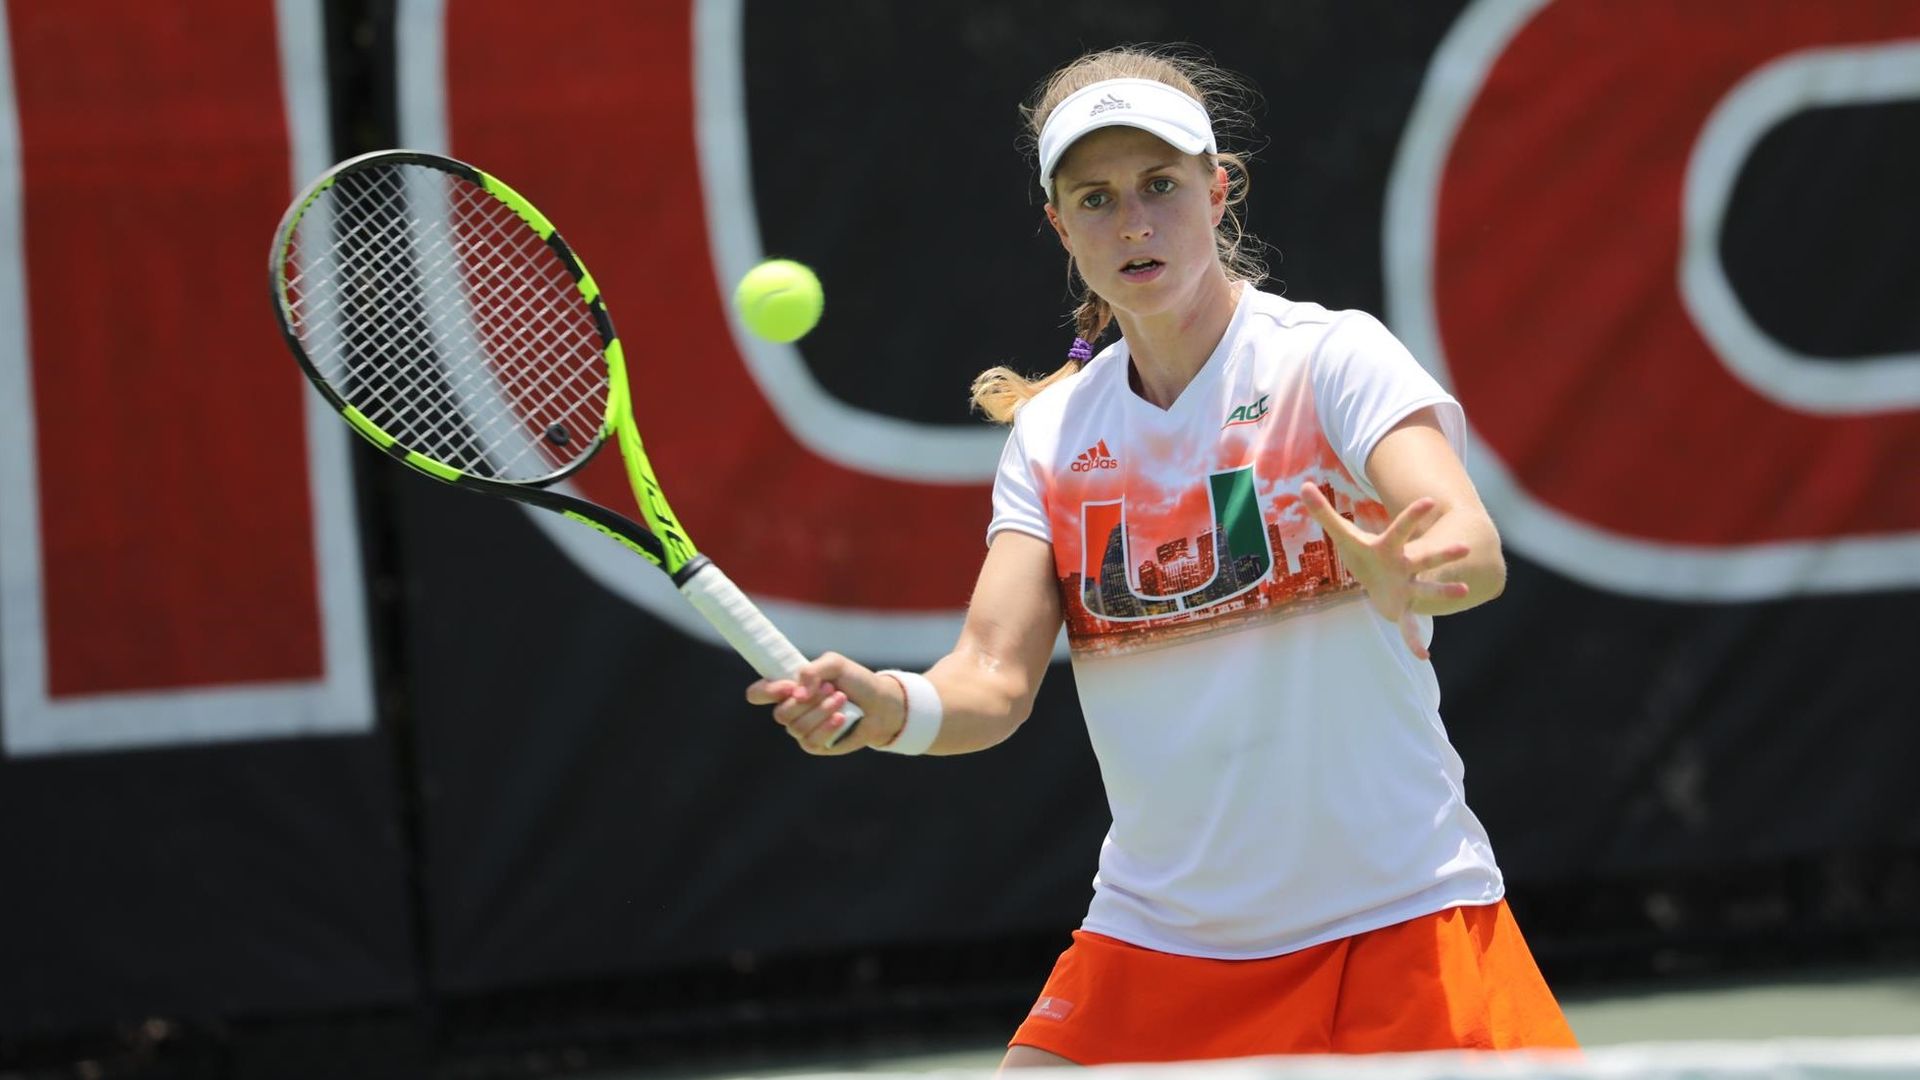 W. Tennis Faces Top-Seeded Vanderbilt in Sweet 16